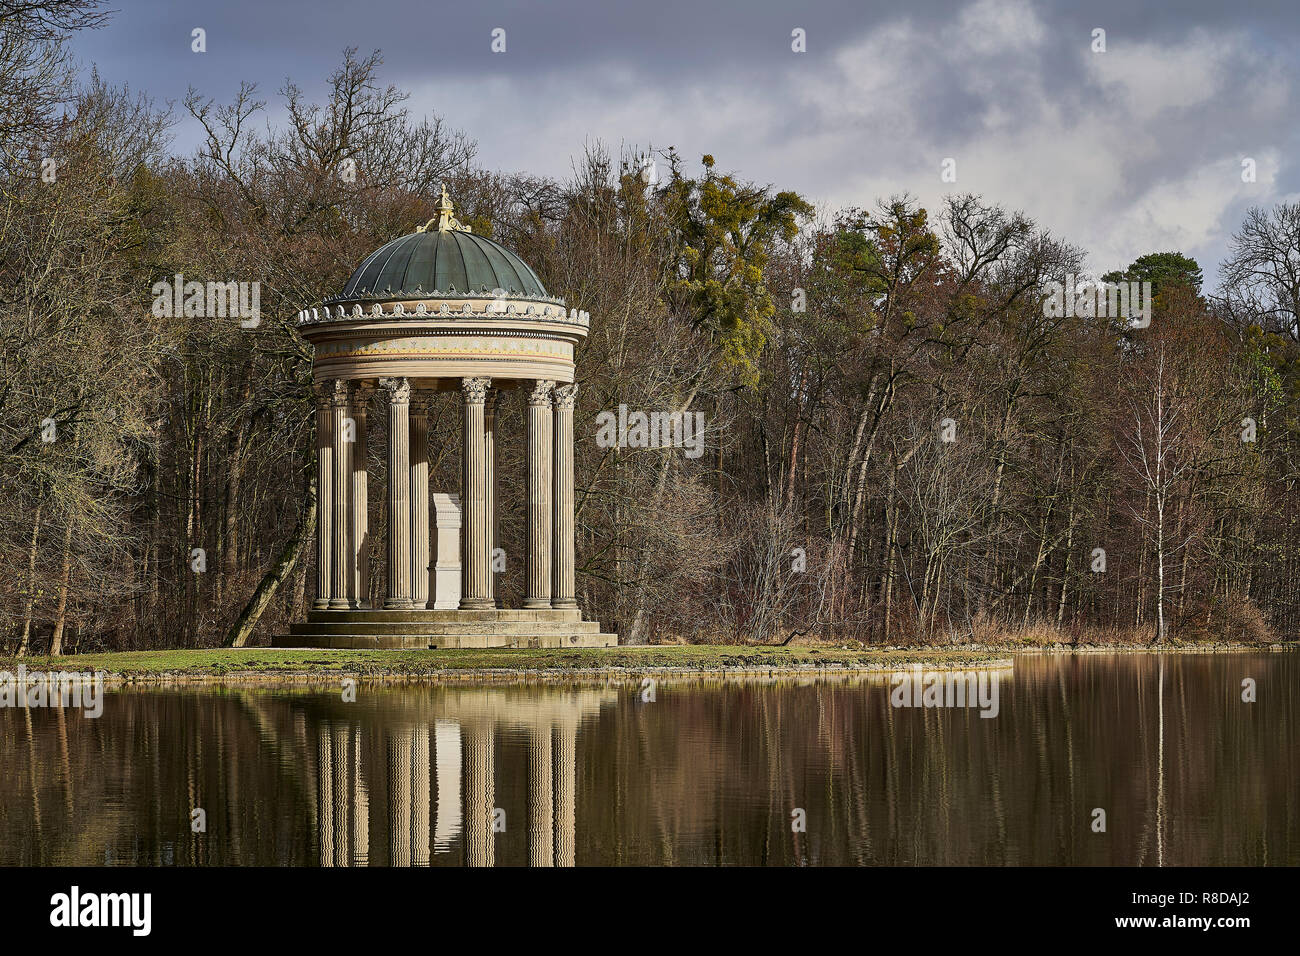 Le temple d'apollon reflète dans le lac et au loin le château de Nymphenburg, ciel bleu et nuages, se sent comme une peinture à l'huile, Munich, Allemagne Banque D'Images